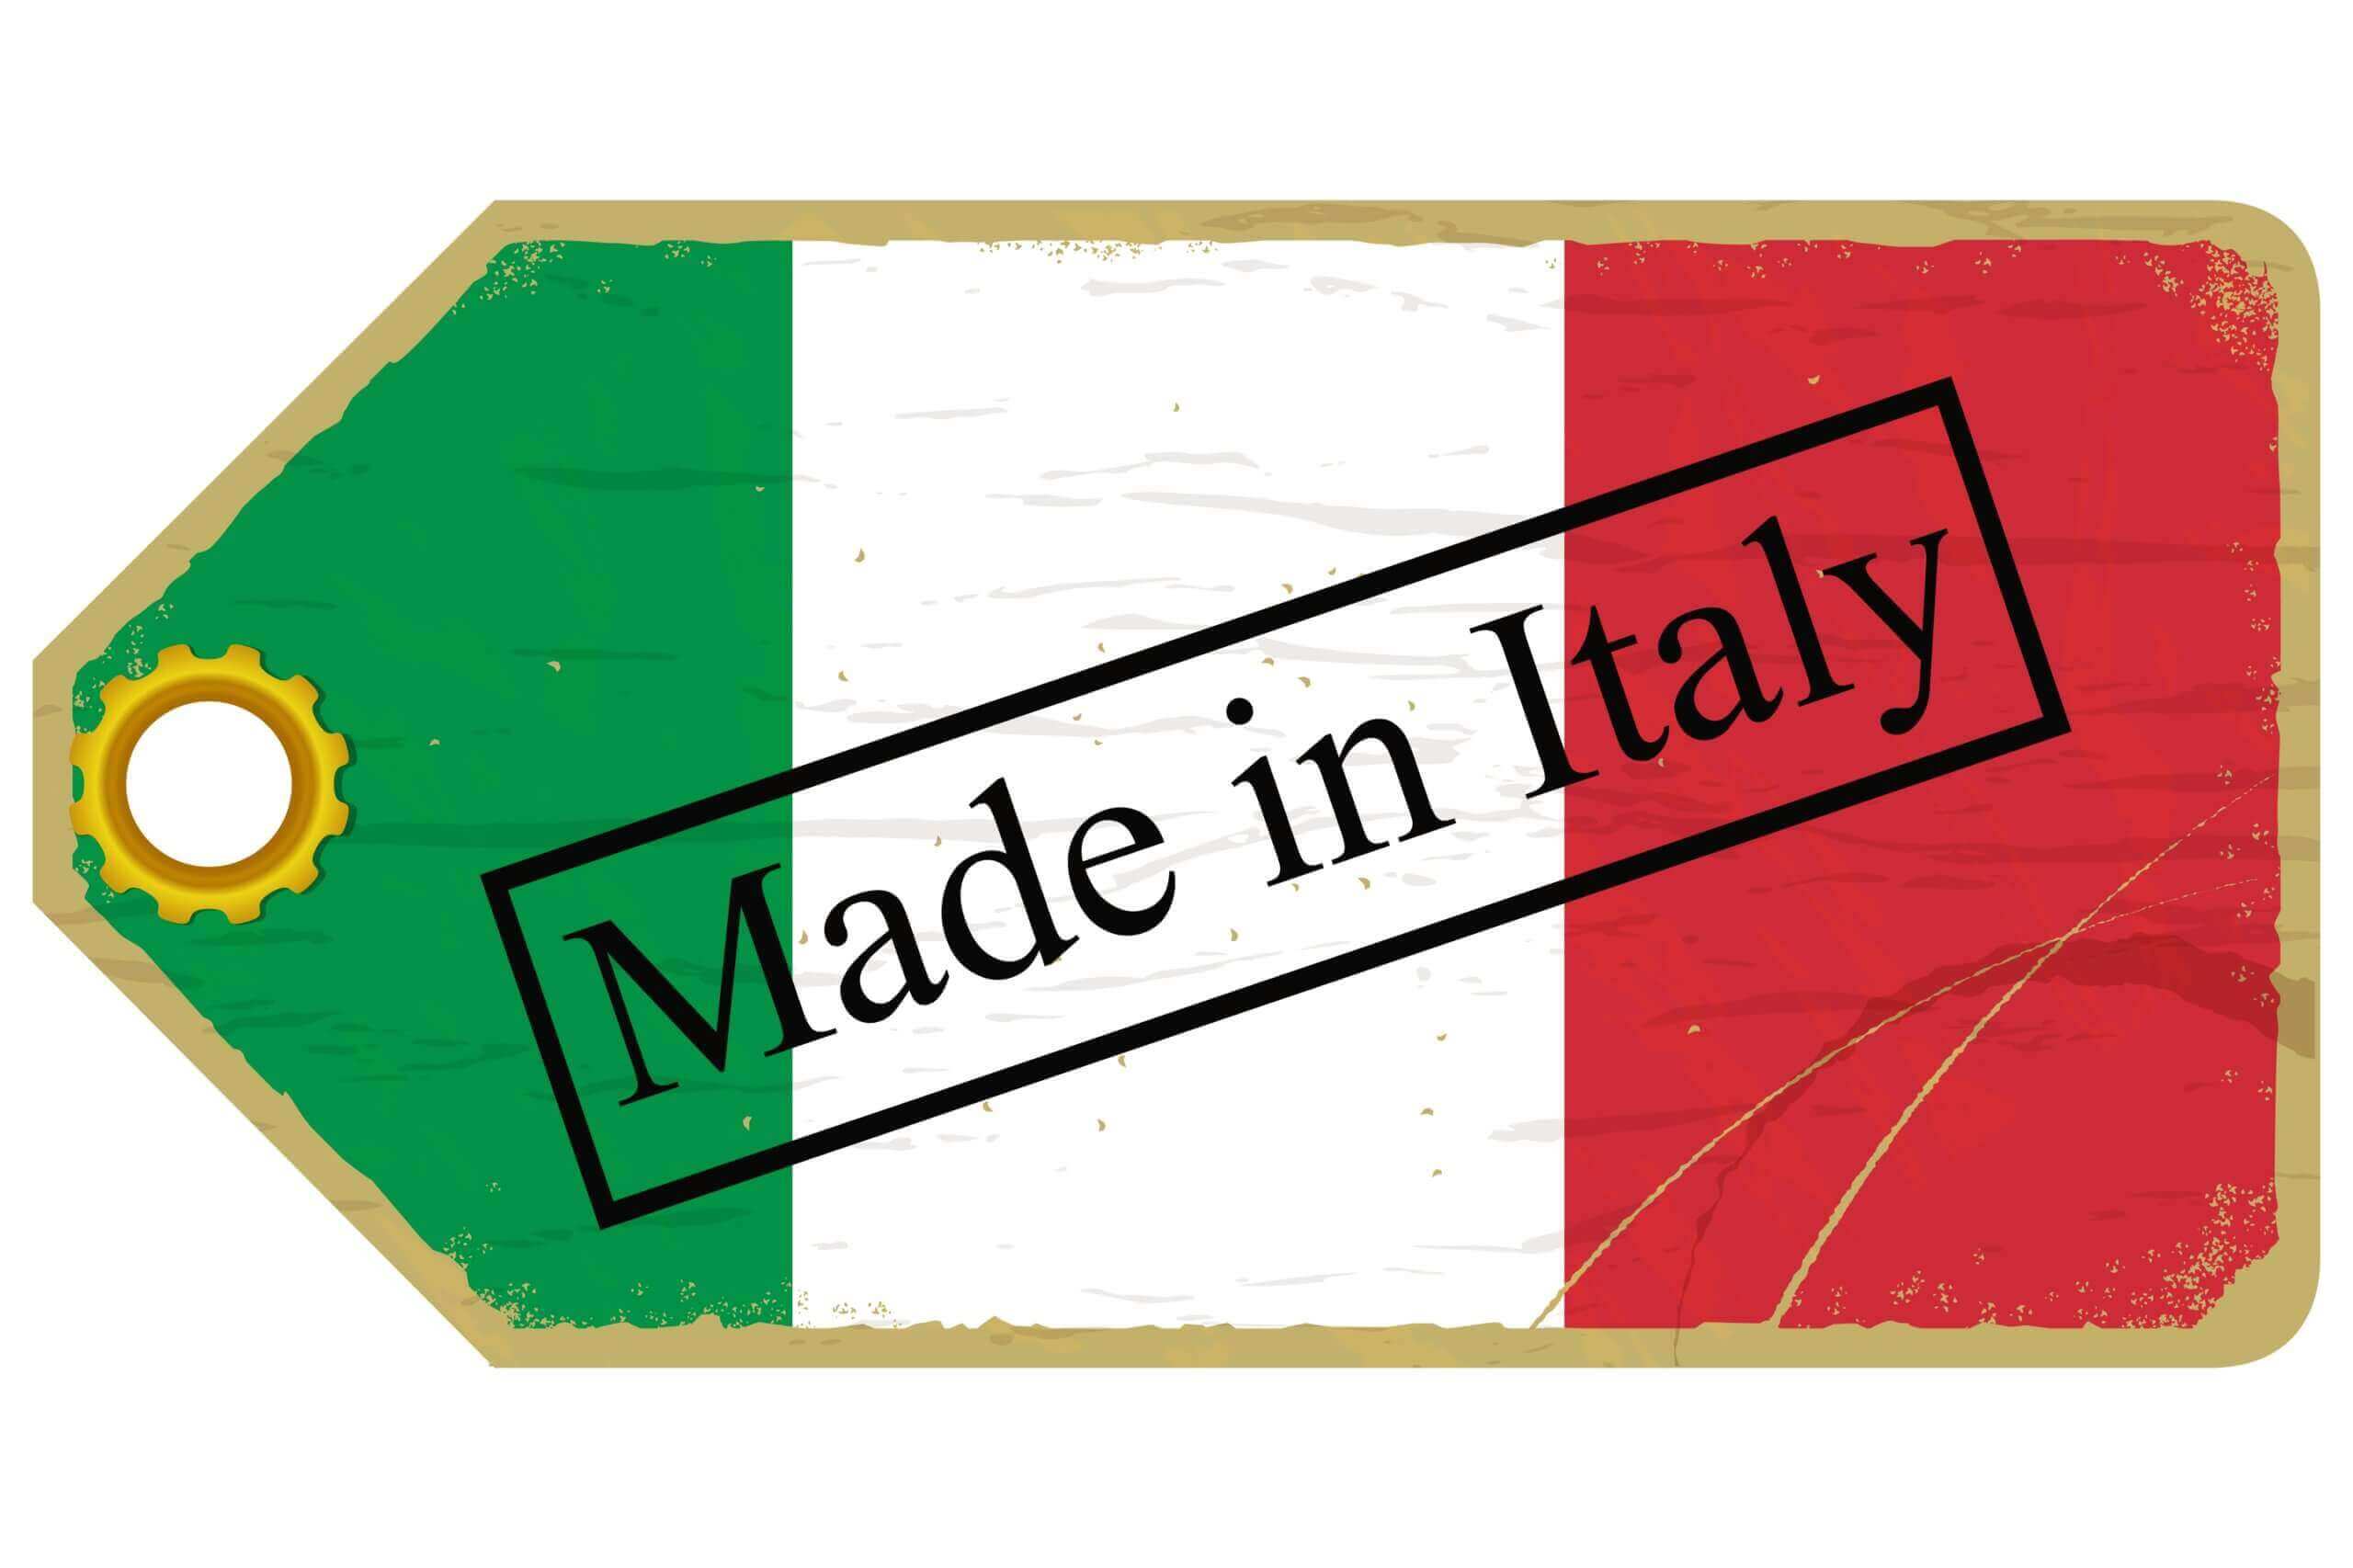 “HOME BIAS”, QUESTO SCONOSCIUTO…PERCHE’ LA MAGGIOR PARTE DEI RISPARMIATORI ITALIANI DETIENE SOPRATTUTTO AZIONI E BOND ITALIANI?